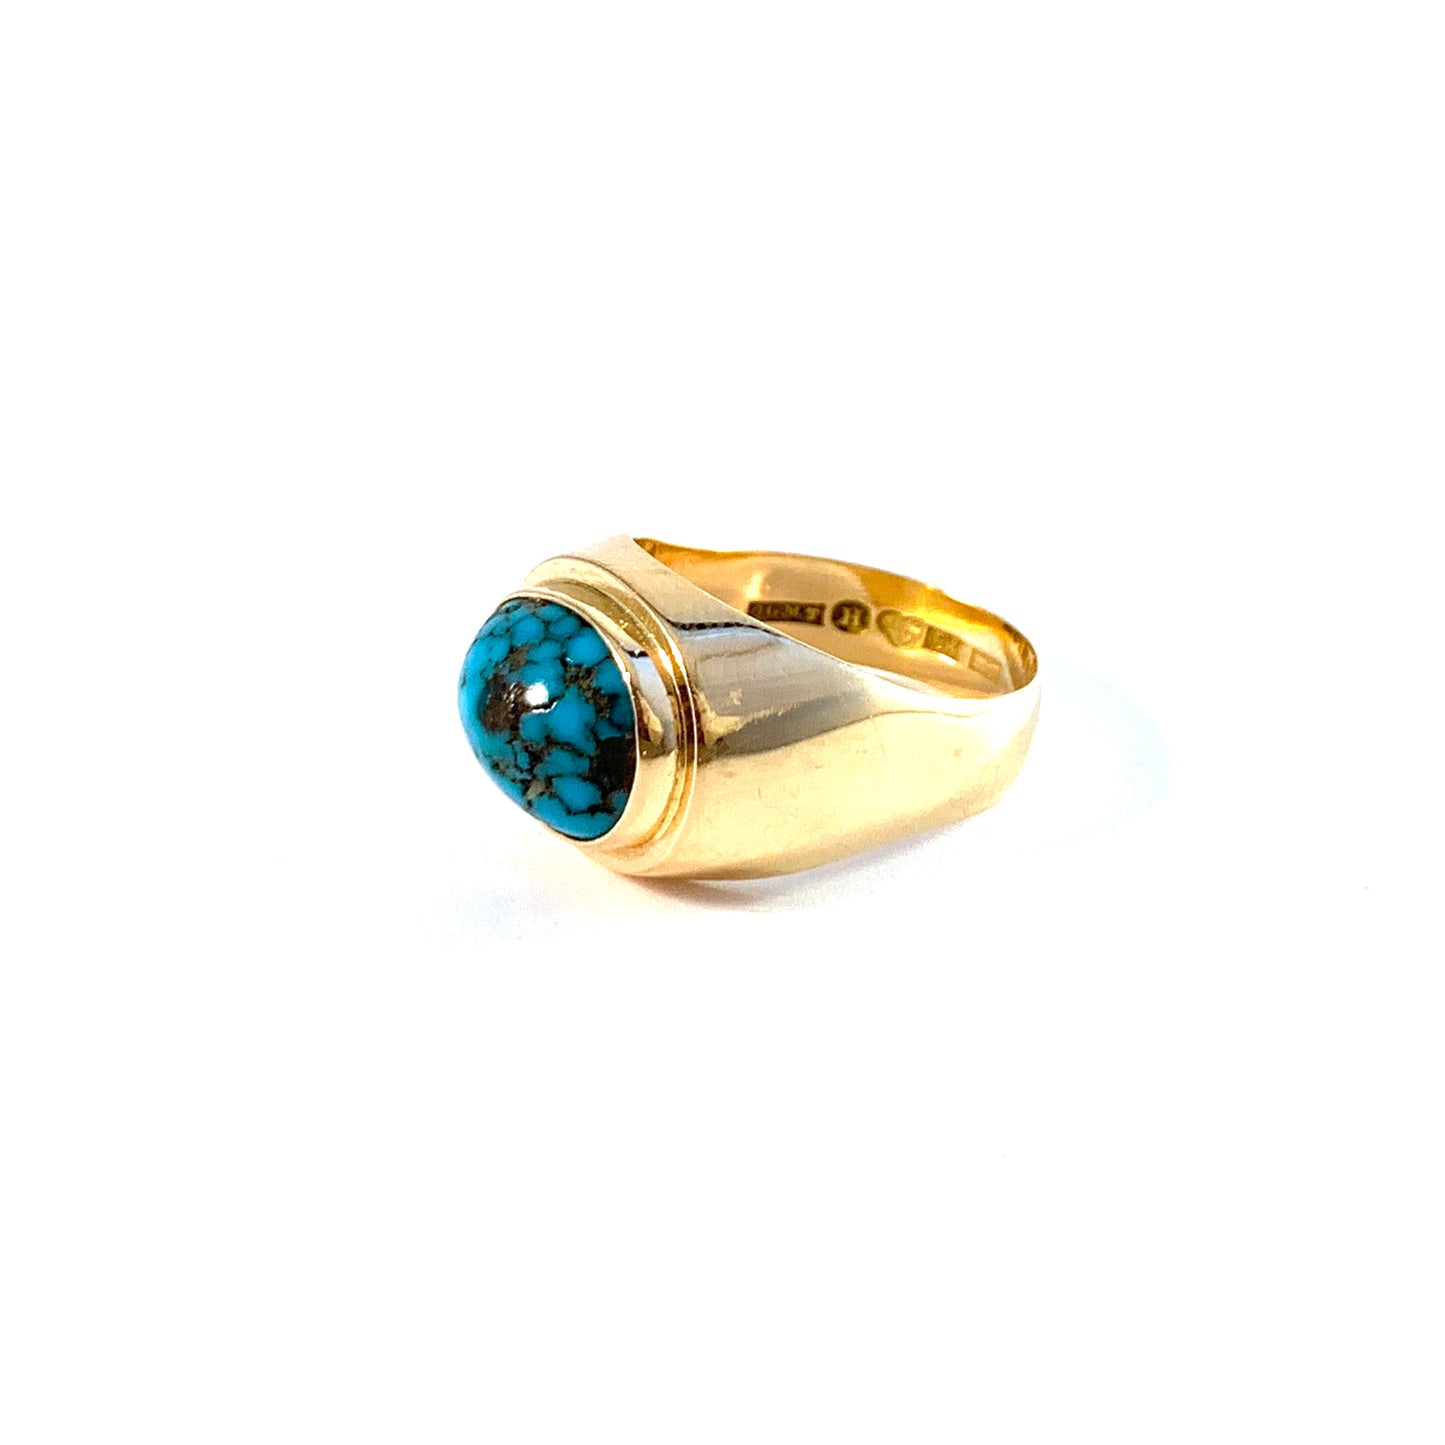 Olle Torrestad, Sweden 1962. Vintage 18k Gold Turquoise Ring.